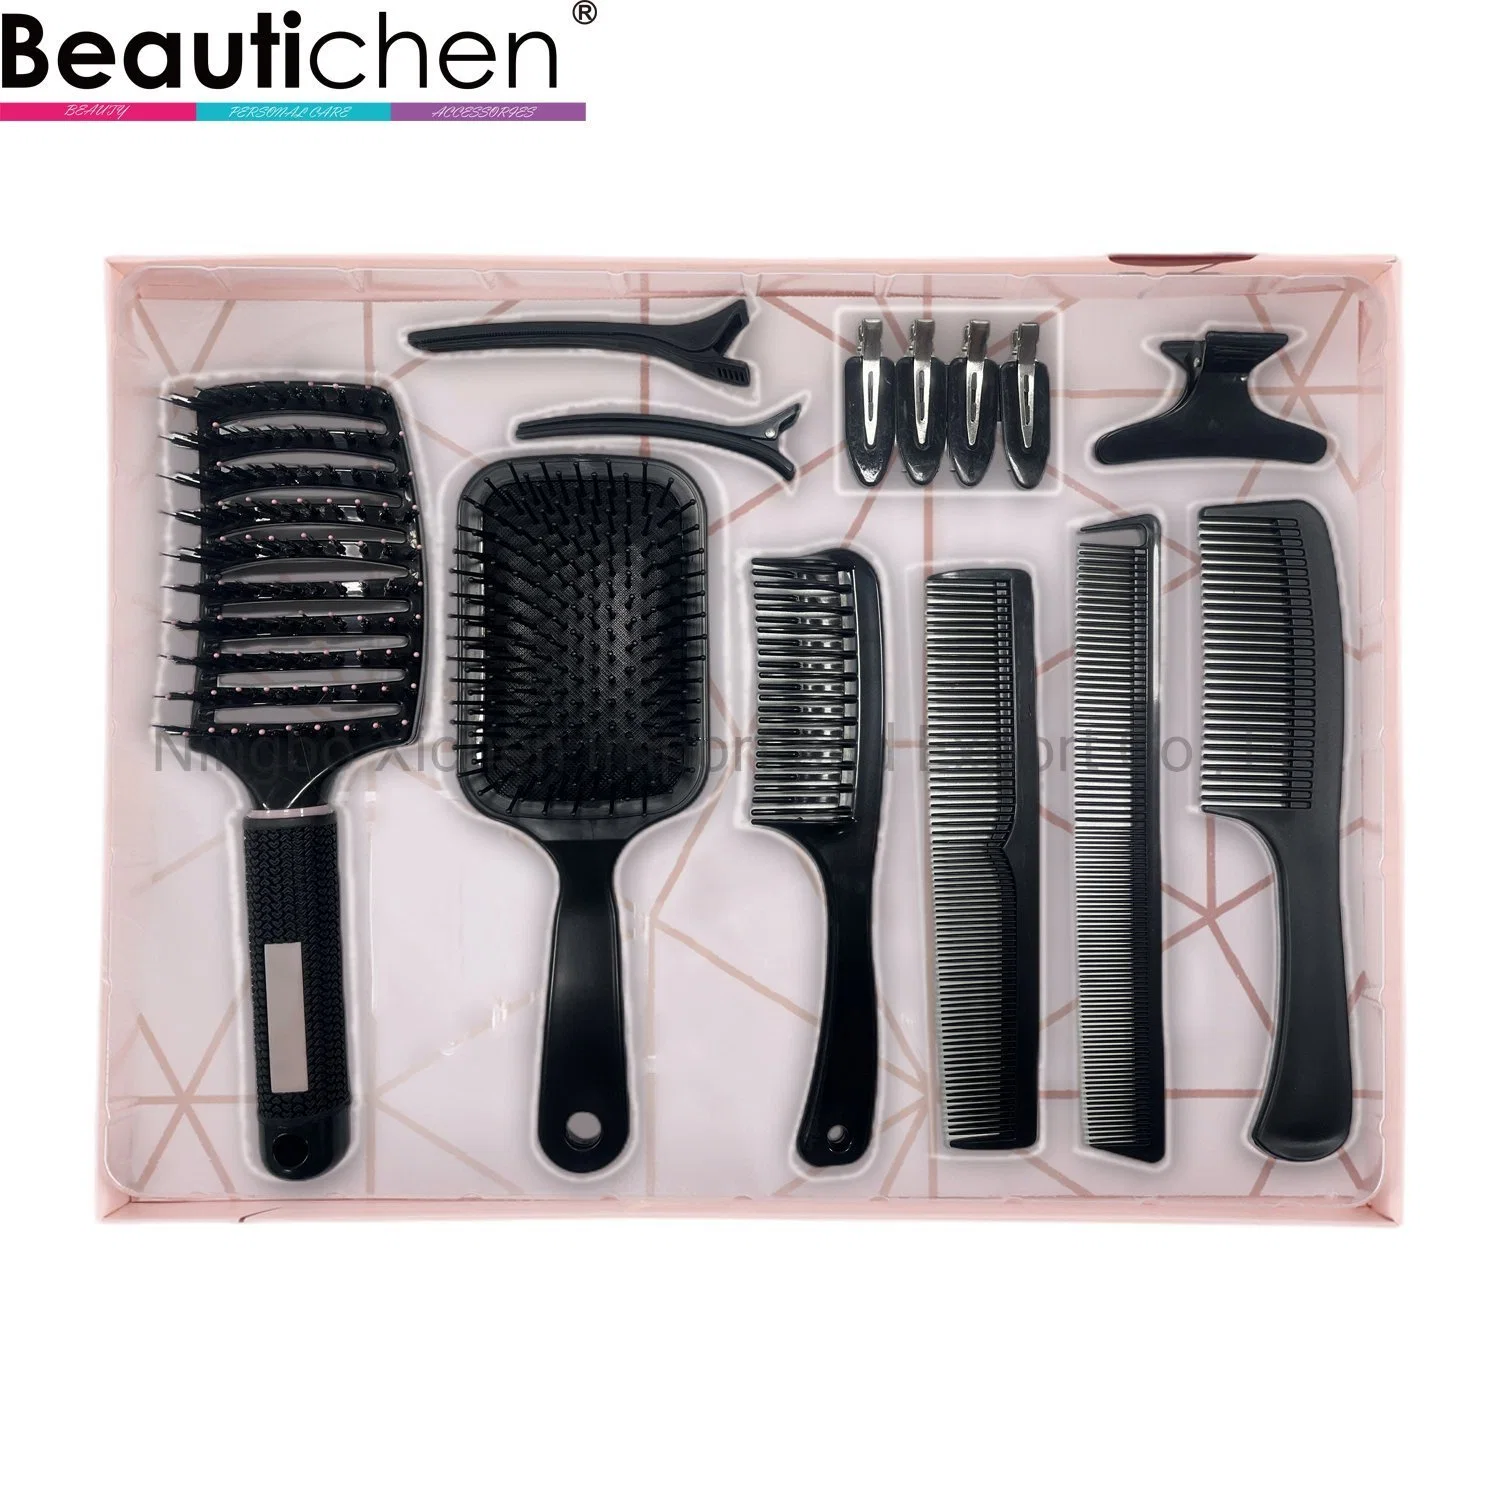 Dom Preto Beautichen definir com escovas de cabelo, Pentes e Presilhas de cabelo 10 em 1 conjunto de escovas de cabelo Novidade